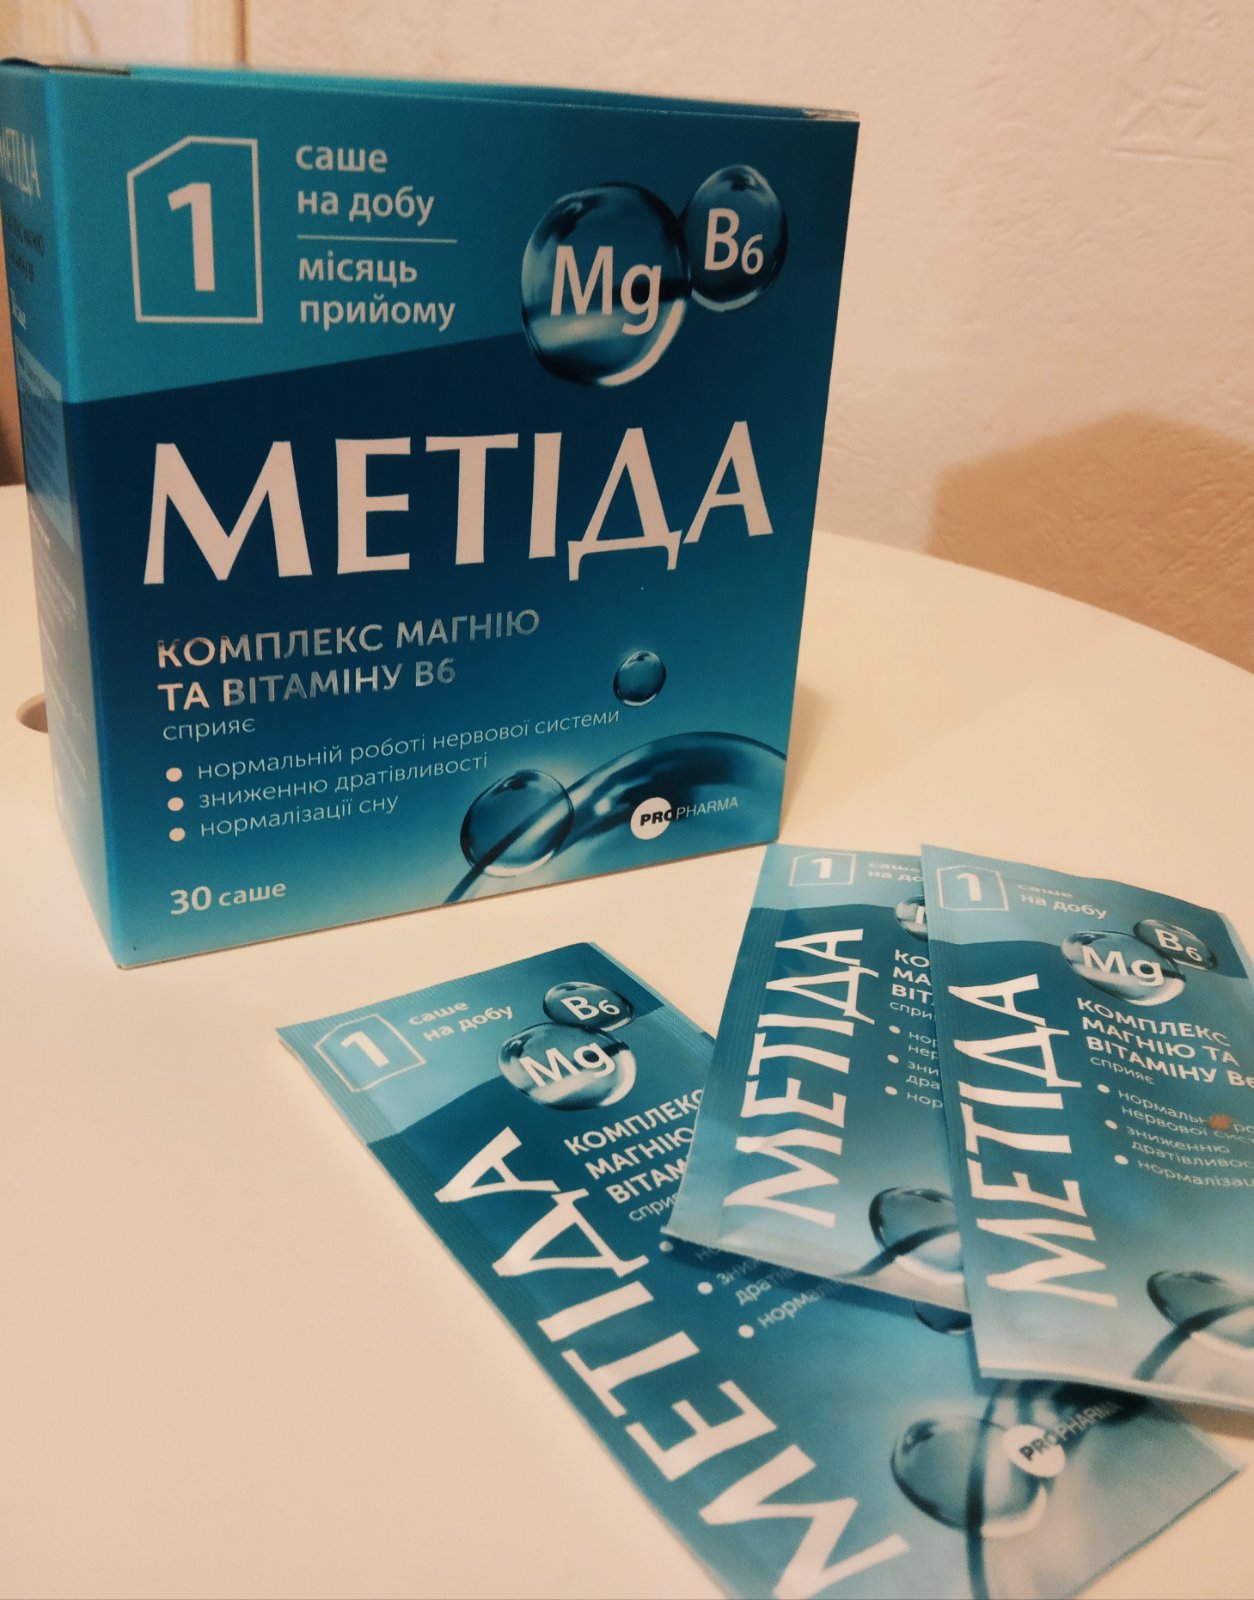 "Метида": аптечний магній може бути дієвим